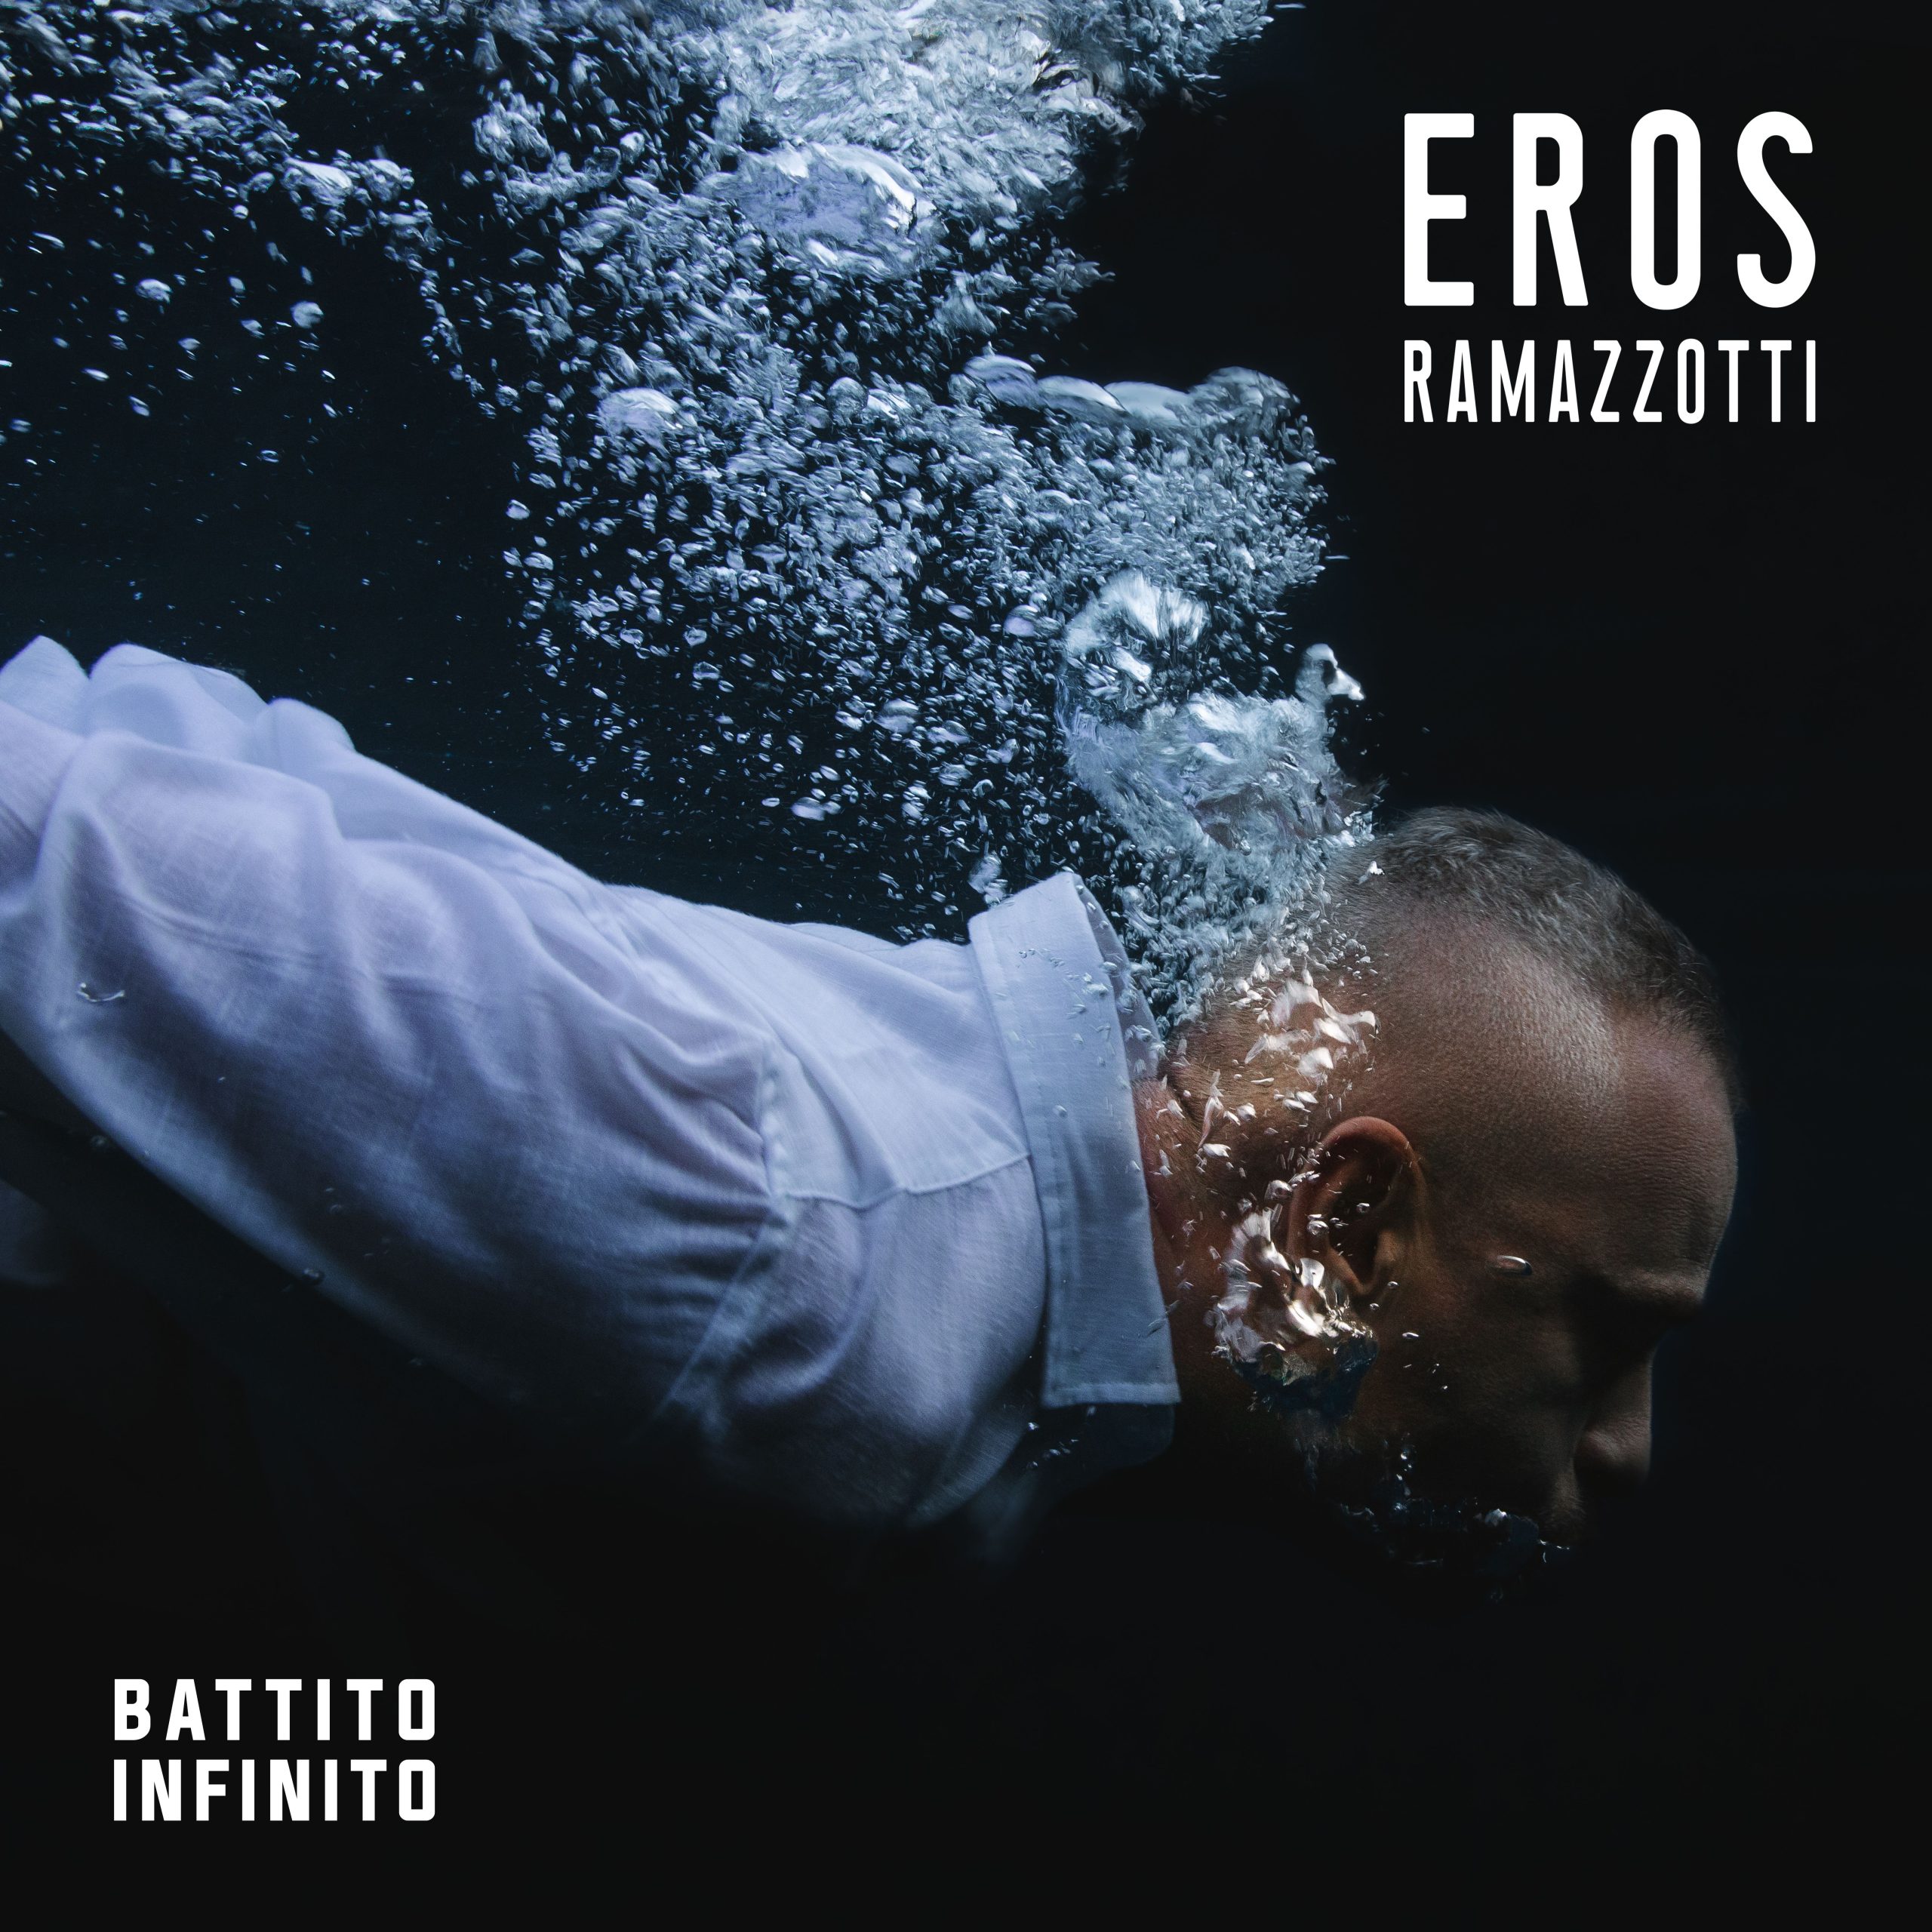 È “Battito Infinito” il nuovo album di Eros Ramazzott disponibile dal 16 settembre